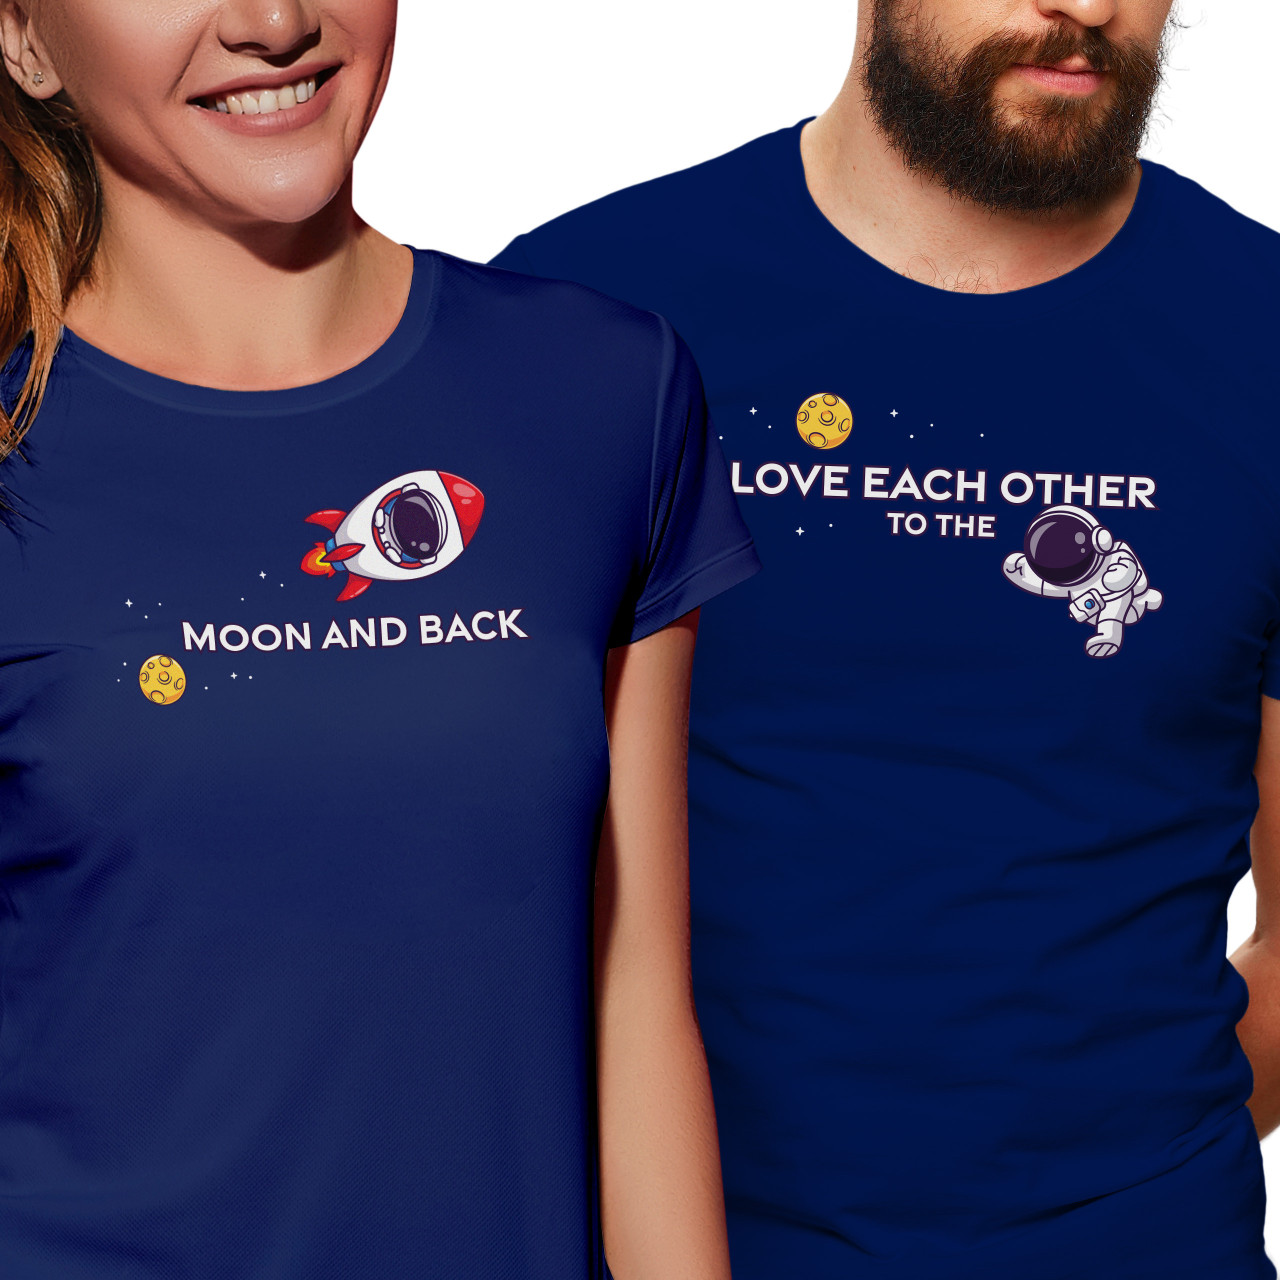 Trička pro páry s potiskem “Love each other to the Moon and back”